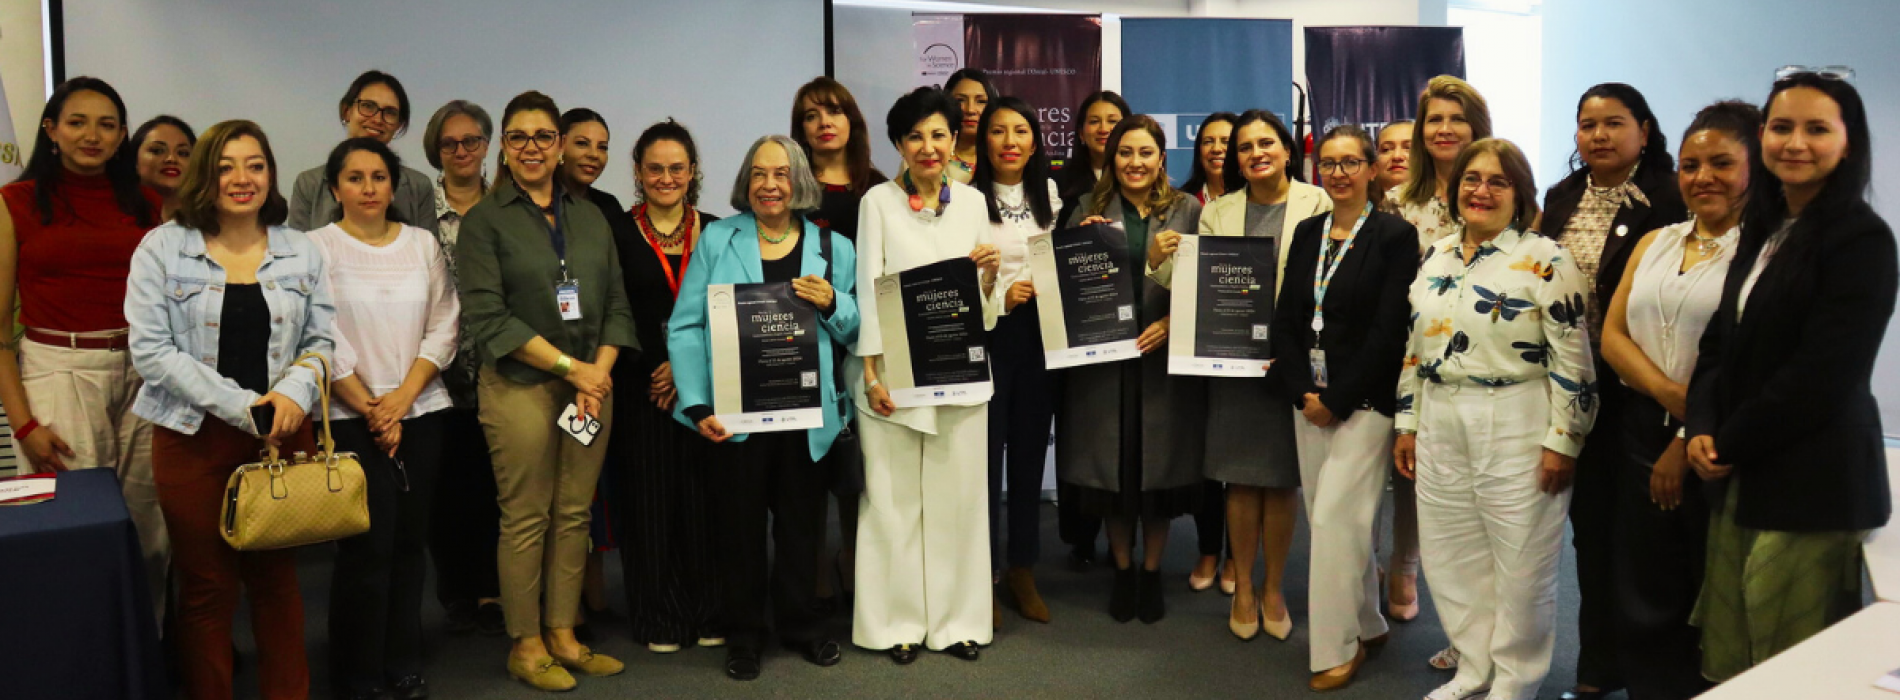 Premio “Por las Mujeres en la Ciencia” primera edición en Ecuador